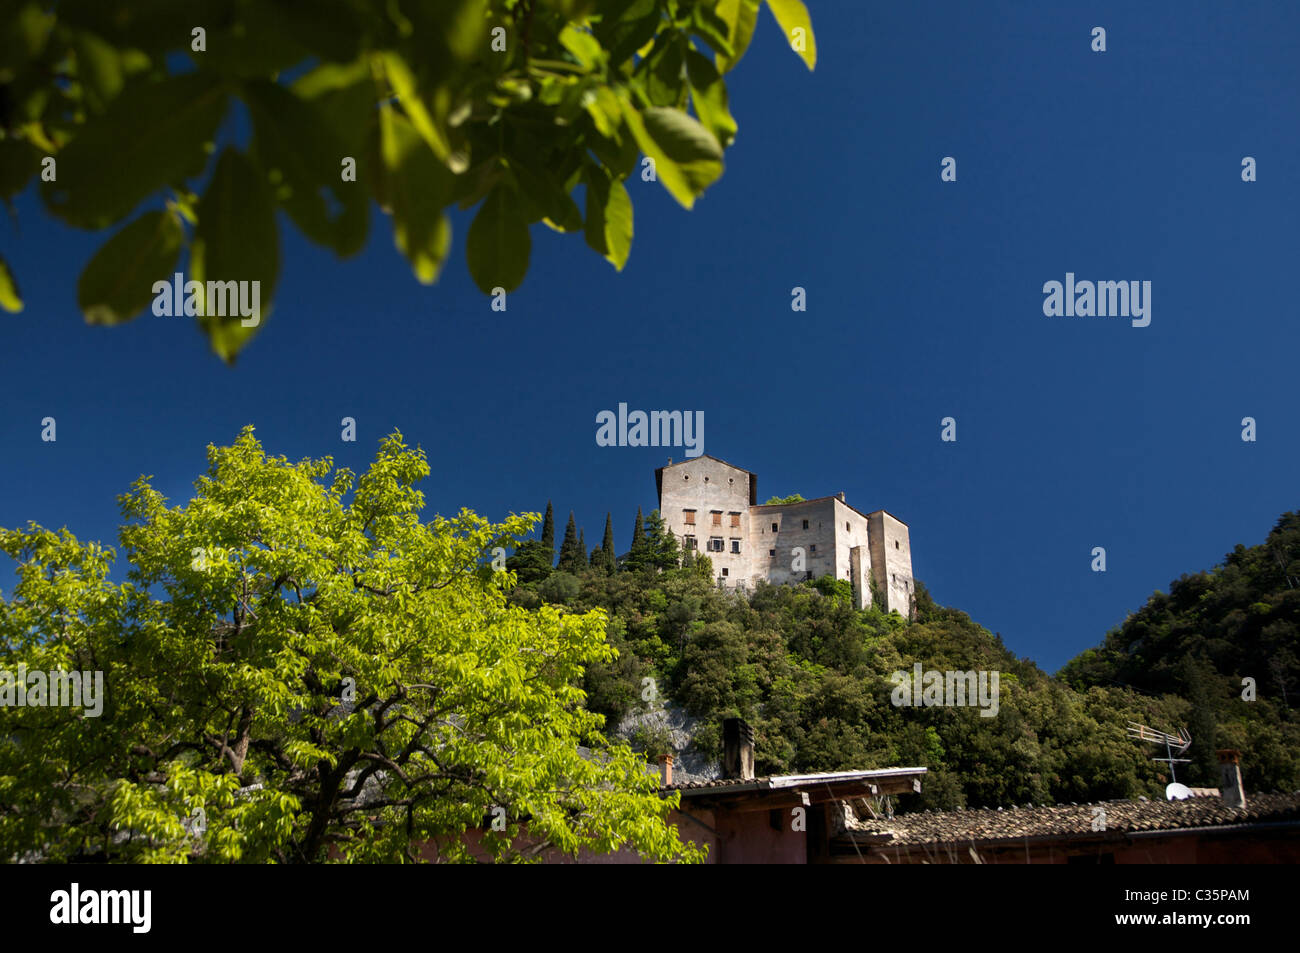 Madruzzo castle, Valle dei Laghi, Trentino Alto Adige, Italy, Europe Stock Photo